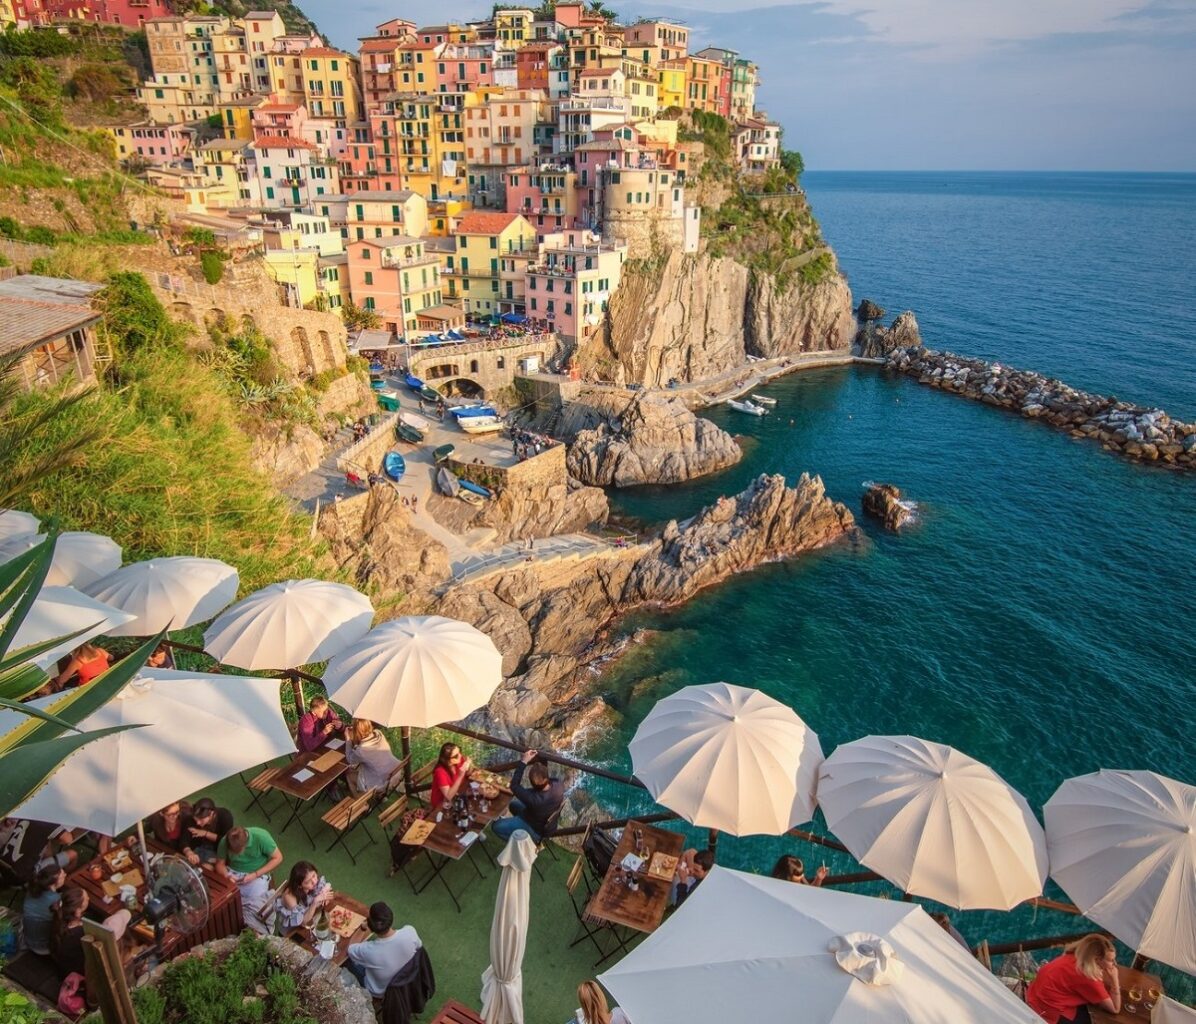 Nessun Dorma, unul din restaurante din Cinque Terre, amplasat sus pe marginea unei stanci, cu mese cu umbrelute albe, iar in departare marea si orasul Monterosso